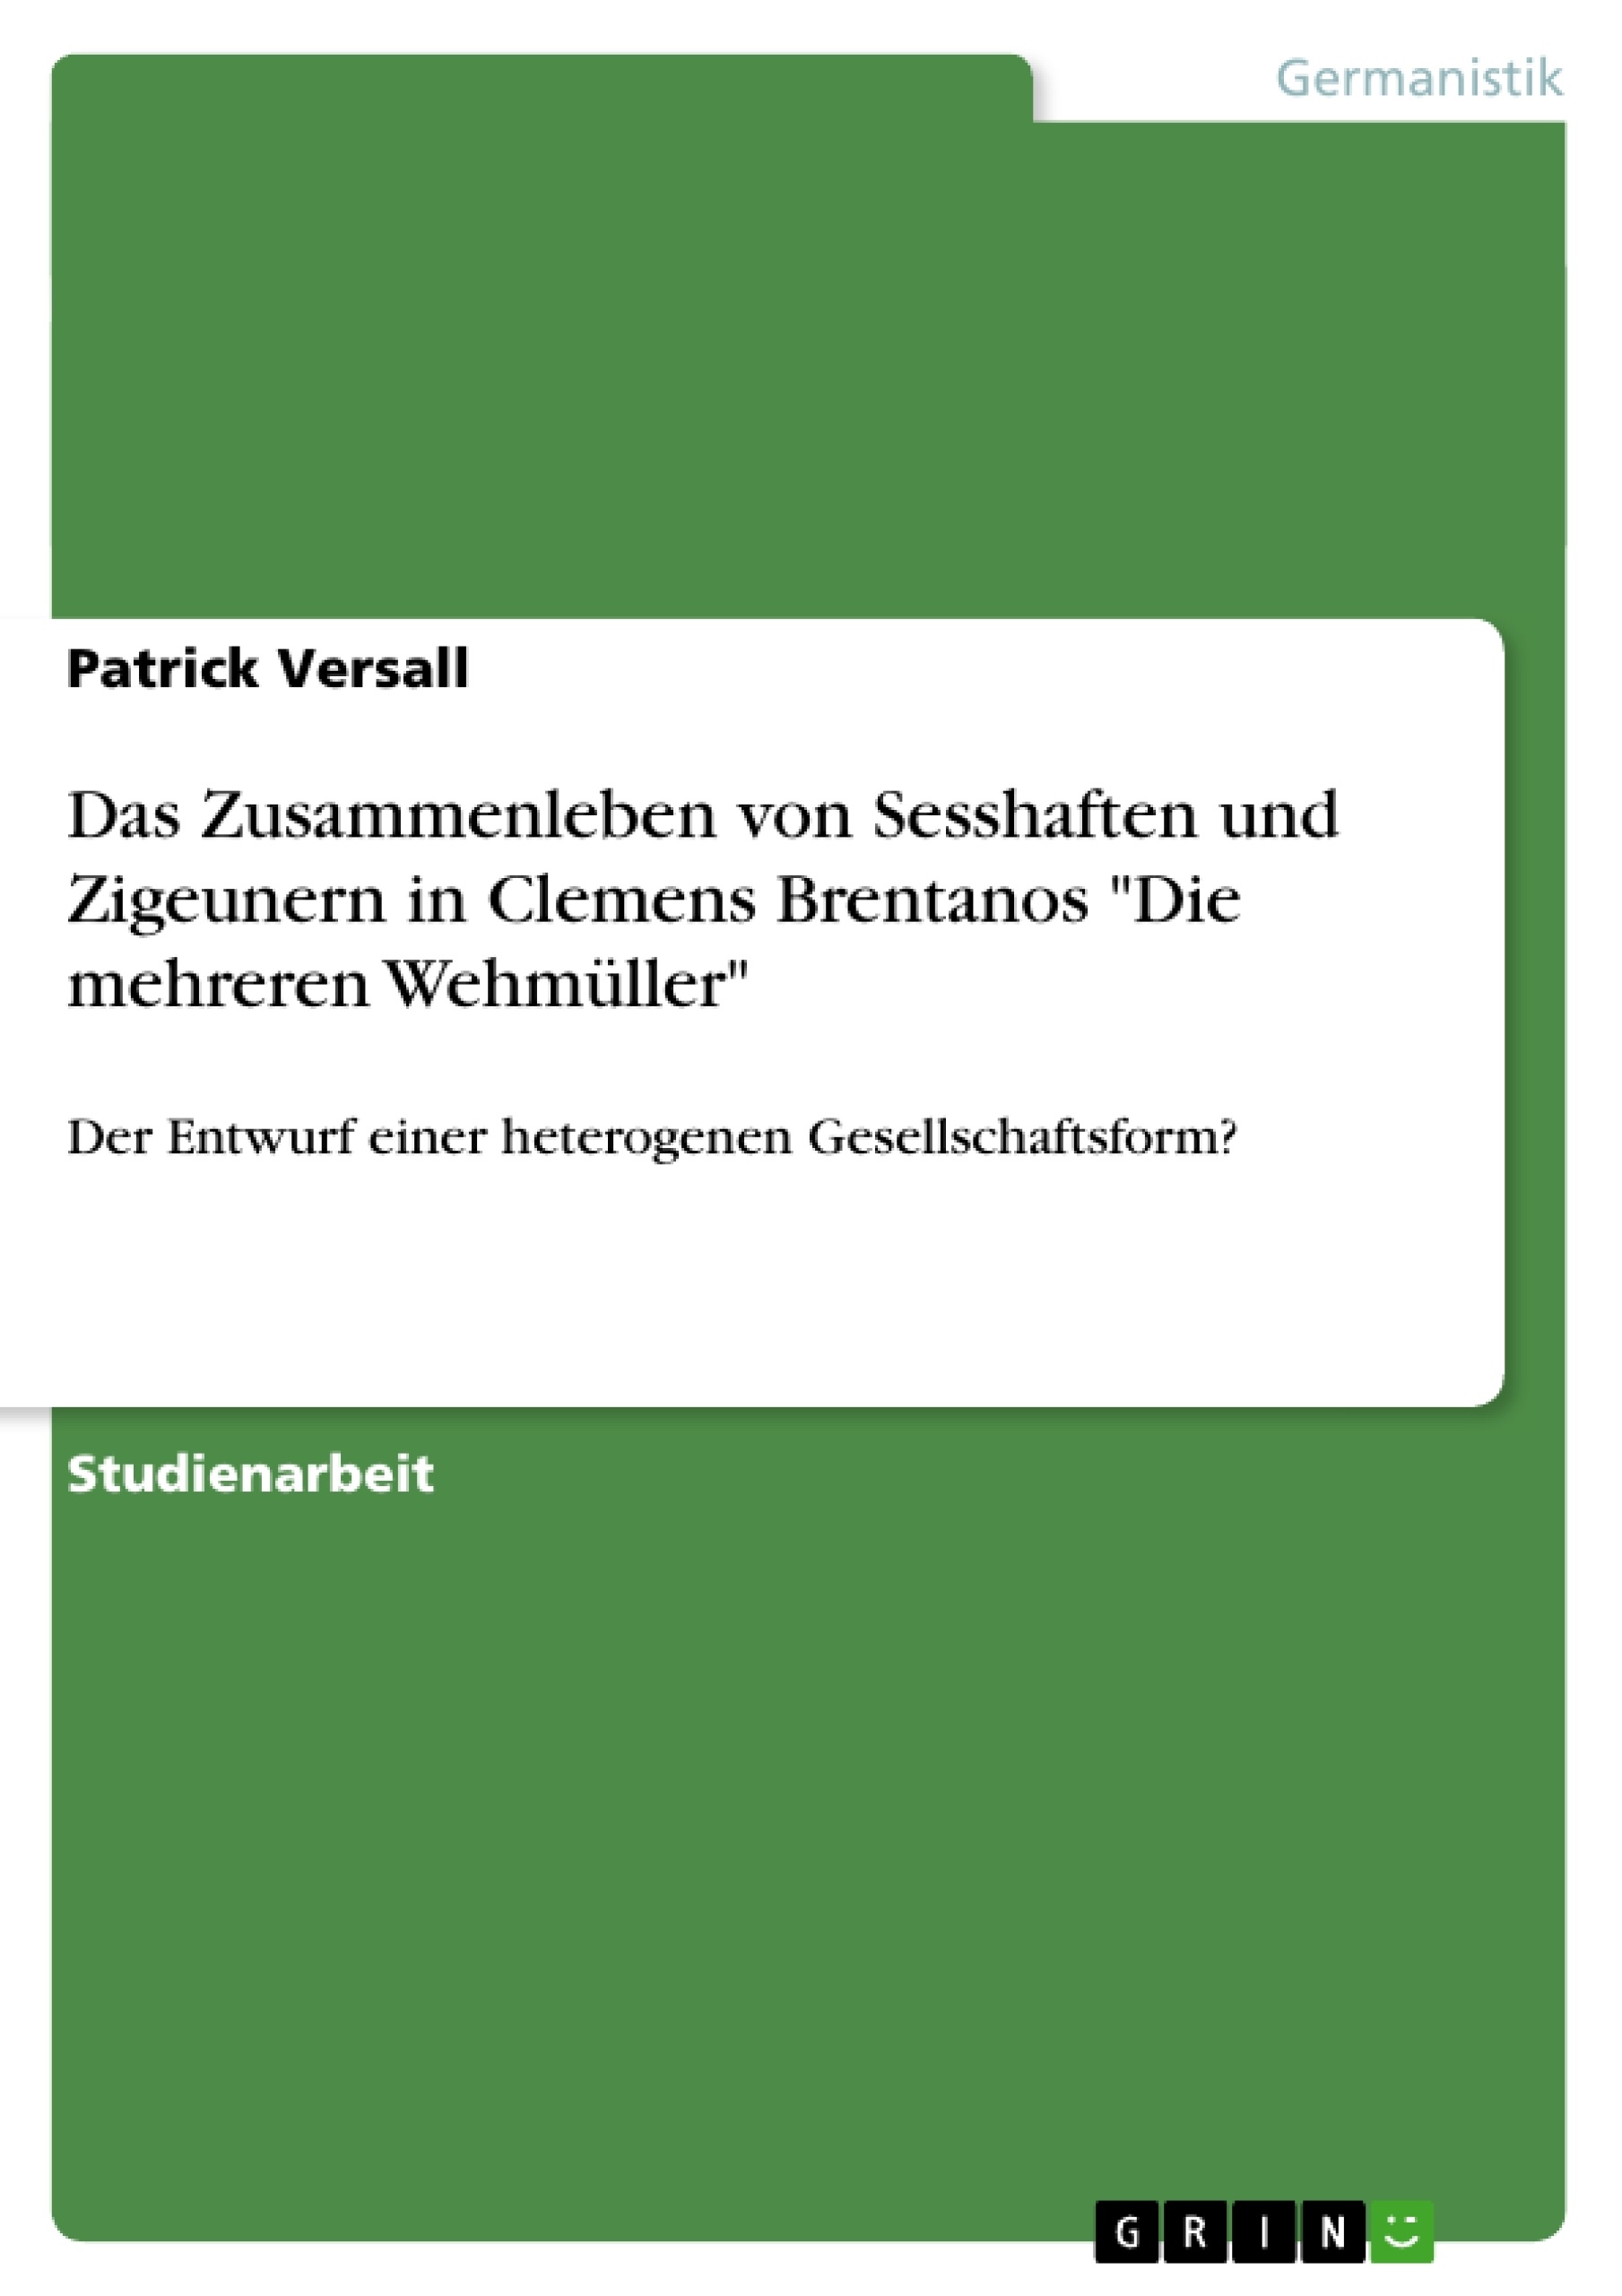 Title: Das Zusammenleben von Sesshaften und Zigeunern in Clemens Brentanos "Die mehreren Wehmüller"